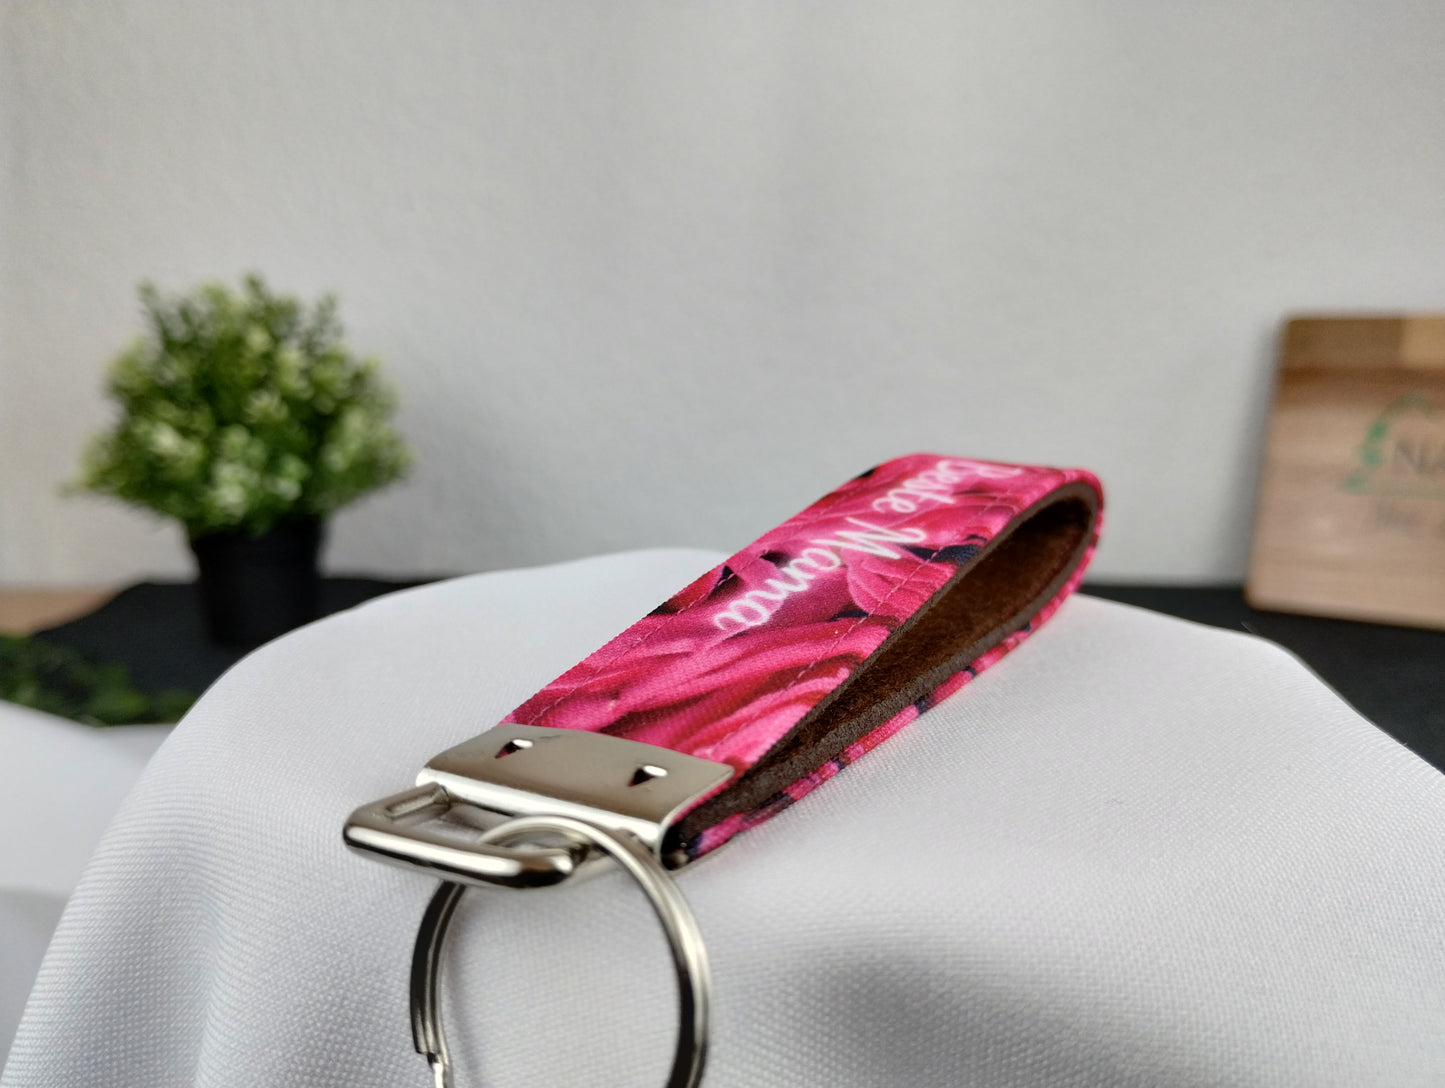 Personalisierbarer Schlüsselanhänger mit pinkem Rosenmotiv, weißer Schrift und innen mit braunem Filz